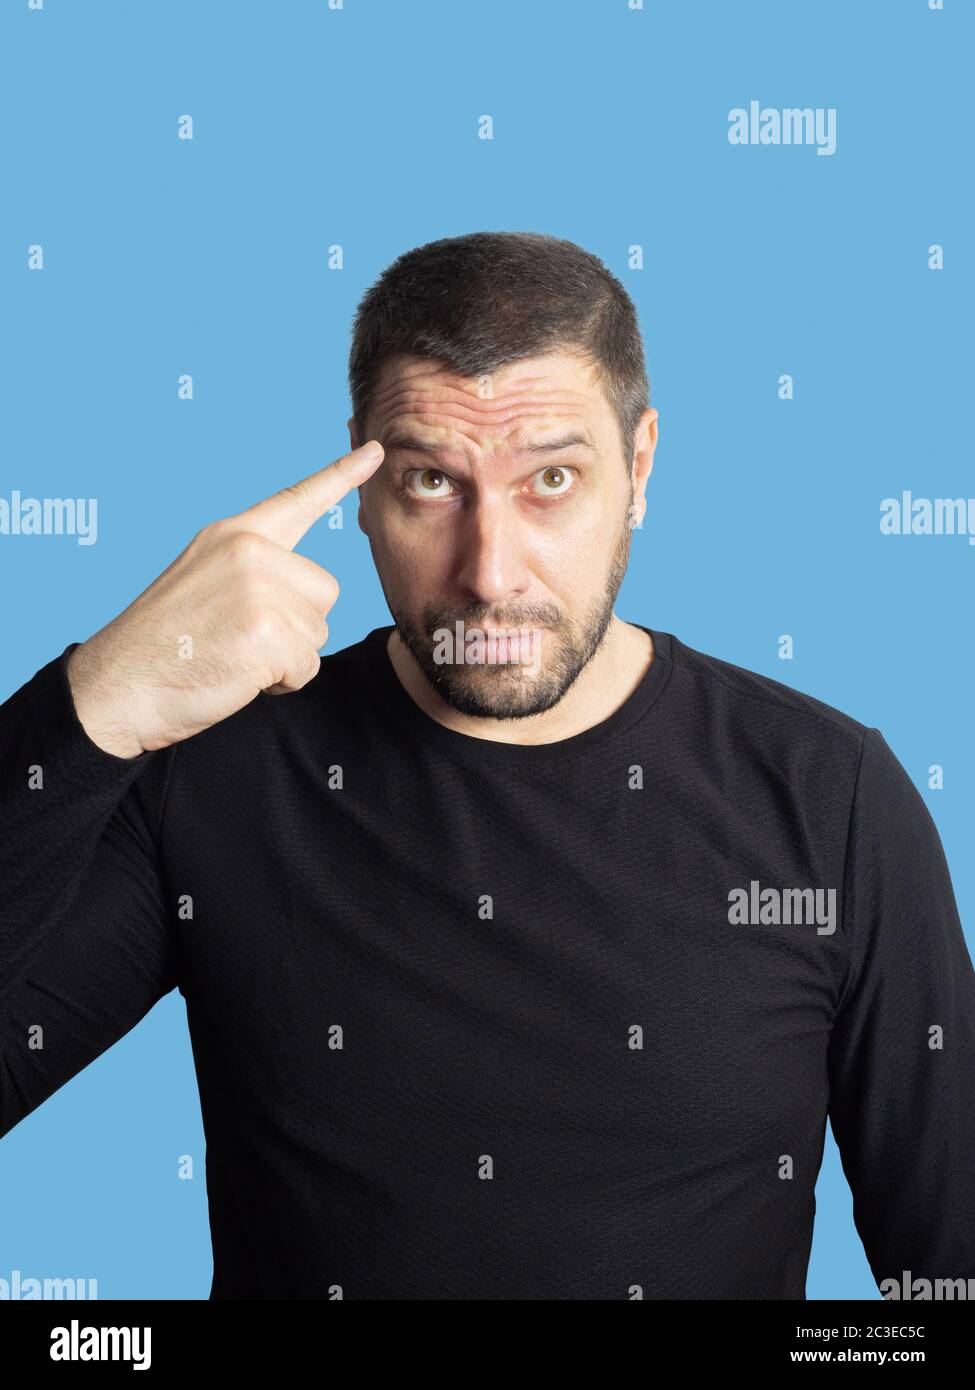 Un hombre sin afeitar con ojos marrones en una sudadera negra mira hacia arriba y apunta un dedo a su frente con arrugas Foto de stock